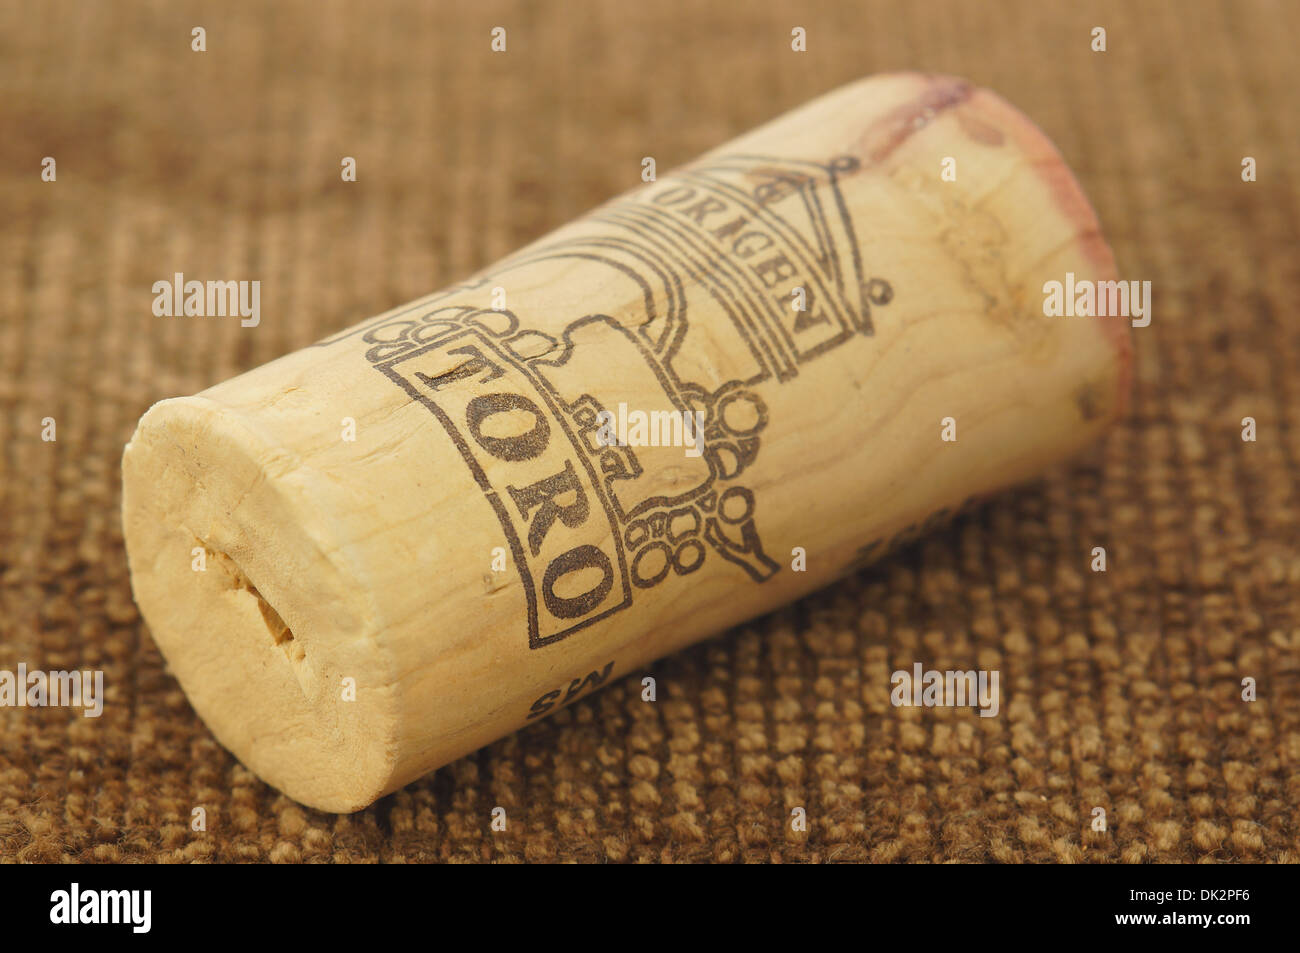 Toro spanischen Wein Korken Stockfoto